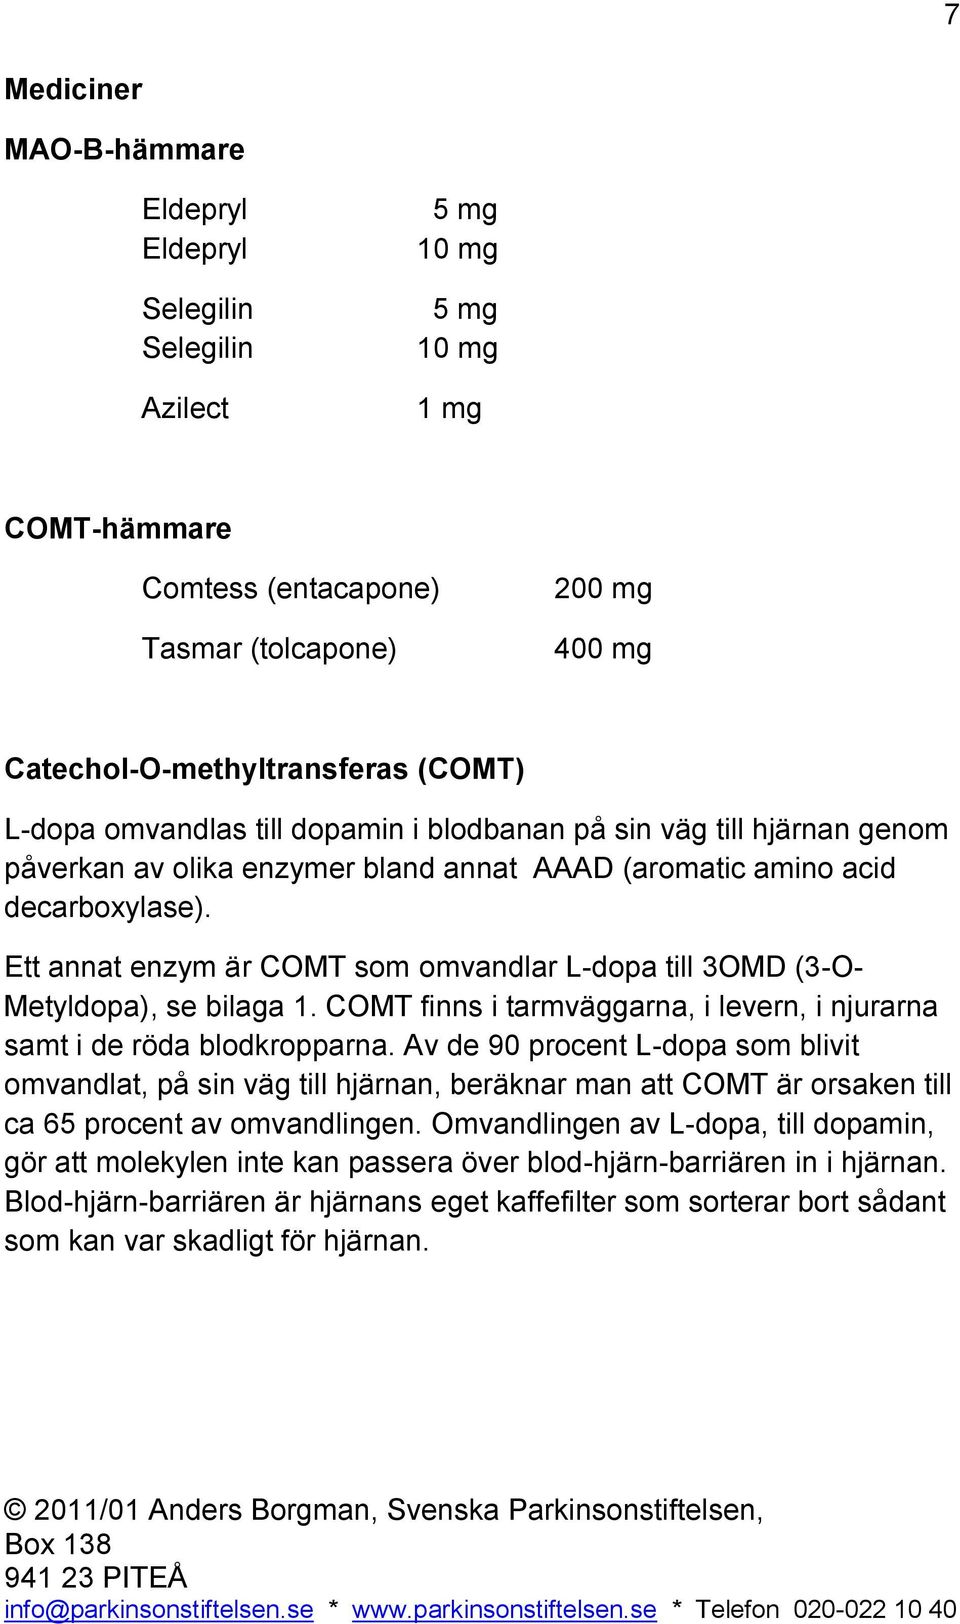 Ett annat enzym är COMT som omvandlar L-dopa till 3OMD (3-O- Metyldopa), se bilaga 1. COMT finns i tarmväggarna, i levern, i njurarna samt i de röda blodkropparna.